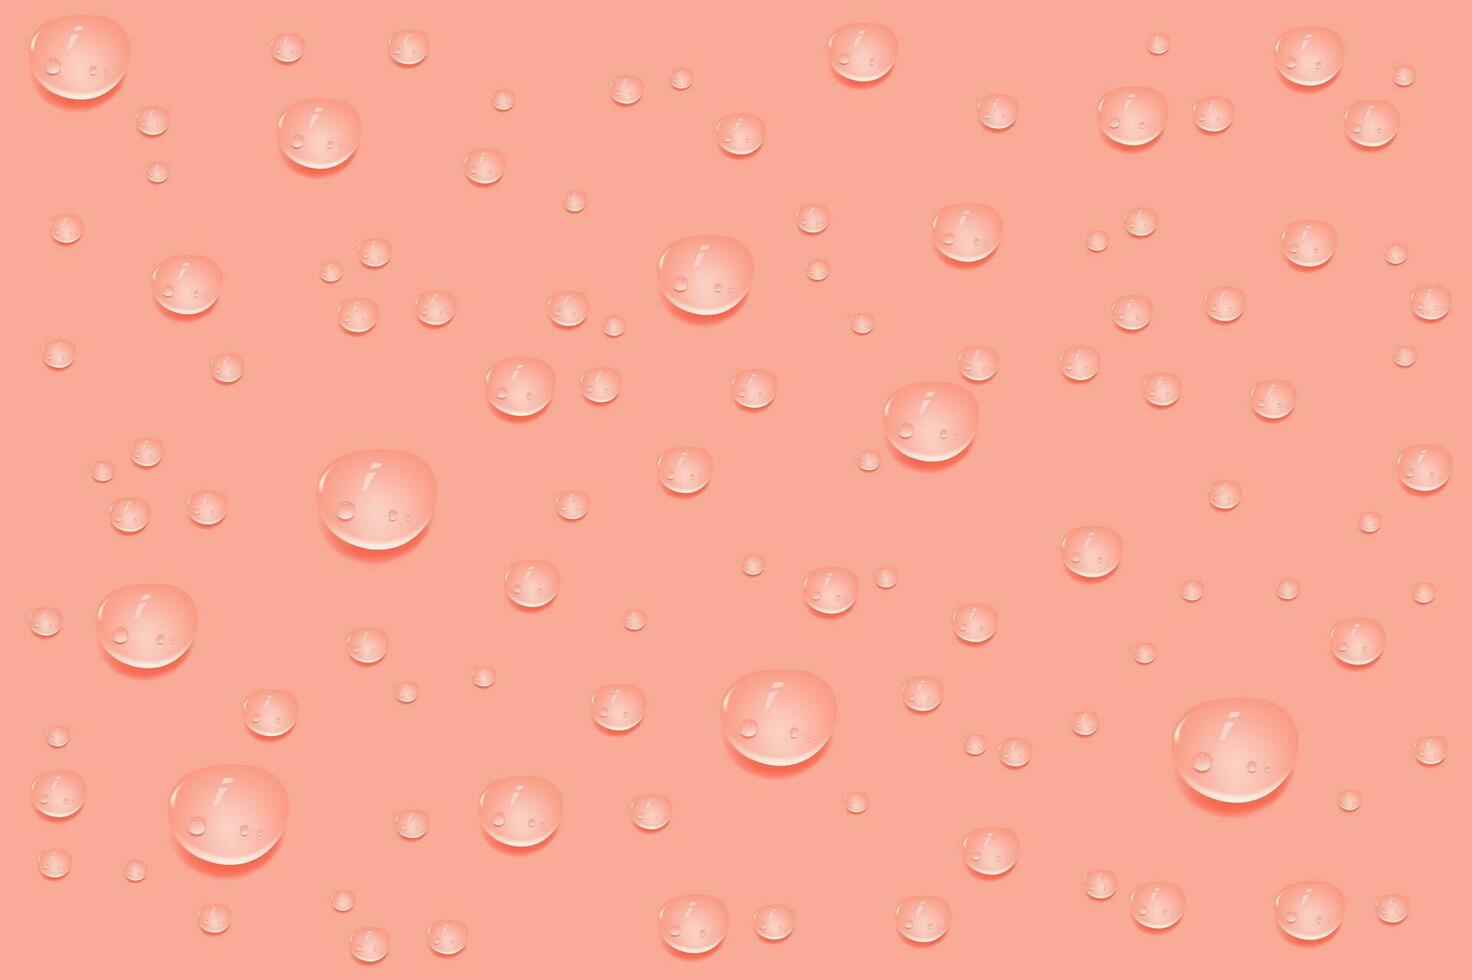 flytande rosa våt droppar av gel eller kollagen.spillt vattenpölar av kosmetisk serum eller vatten. runda rena swatch av väsen lotion eller gelé för hud vård.skönhet bakgrund med olja droppar. vektor